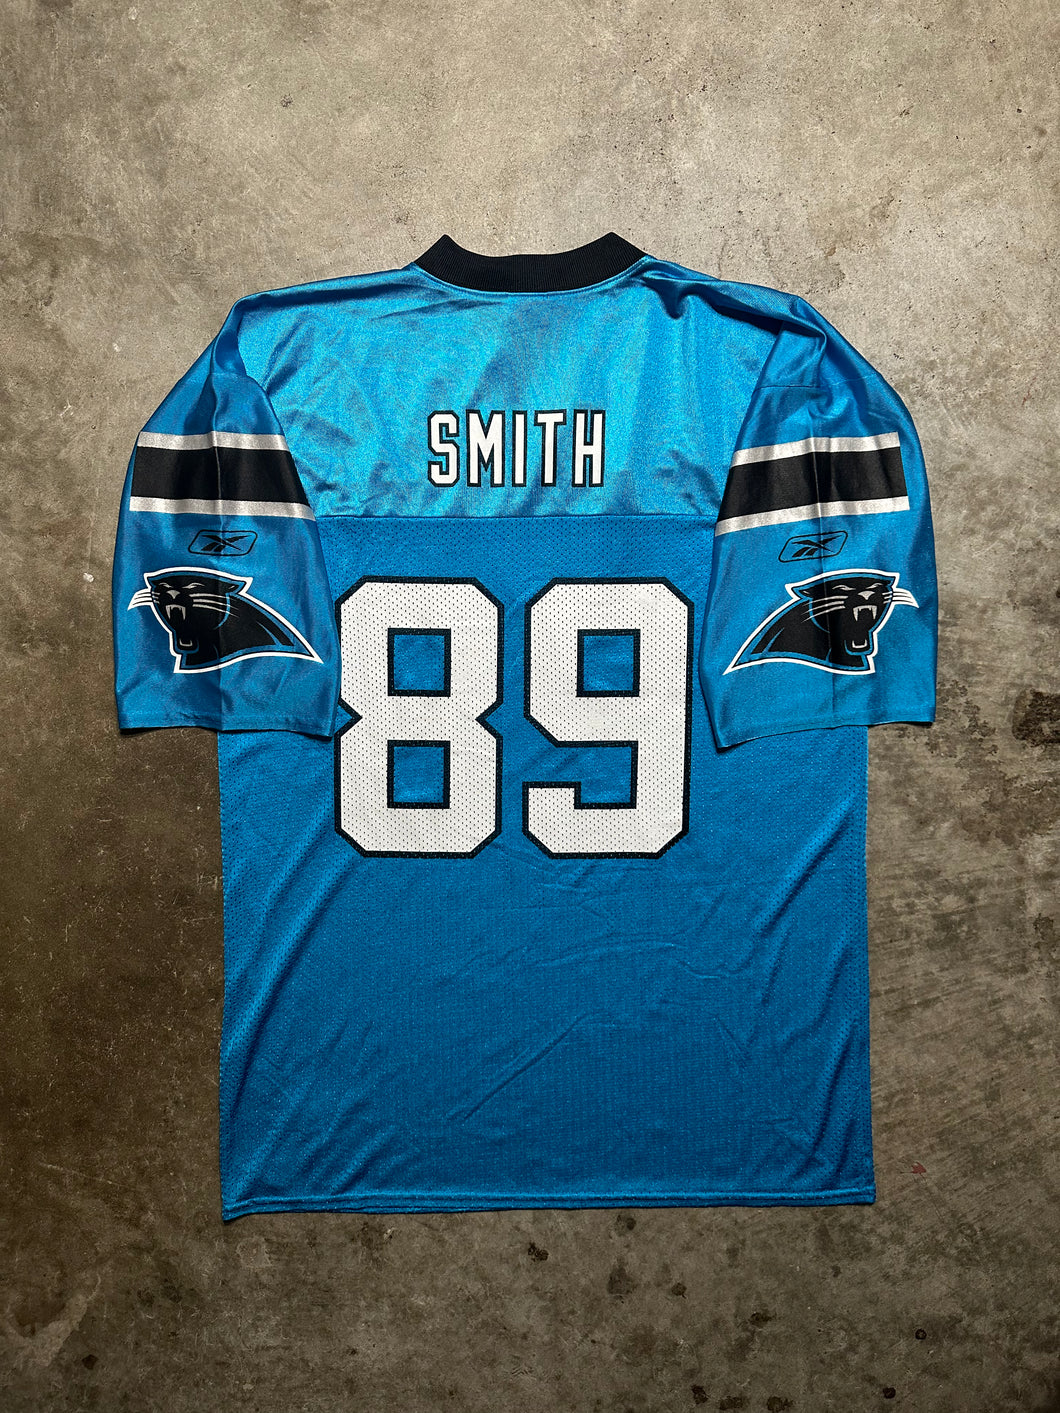 Carolina Panthers Early ‘00s Steve Smith Alternate Jersey (Large)